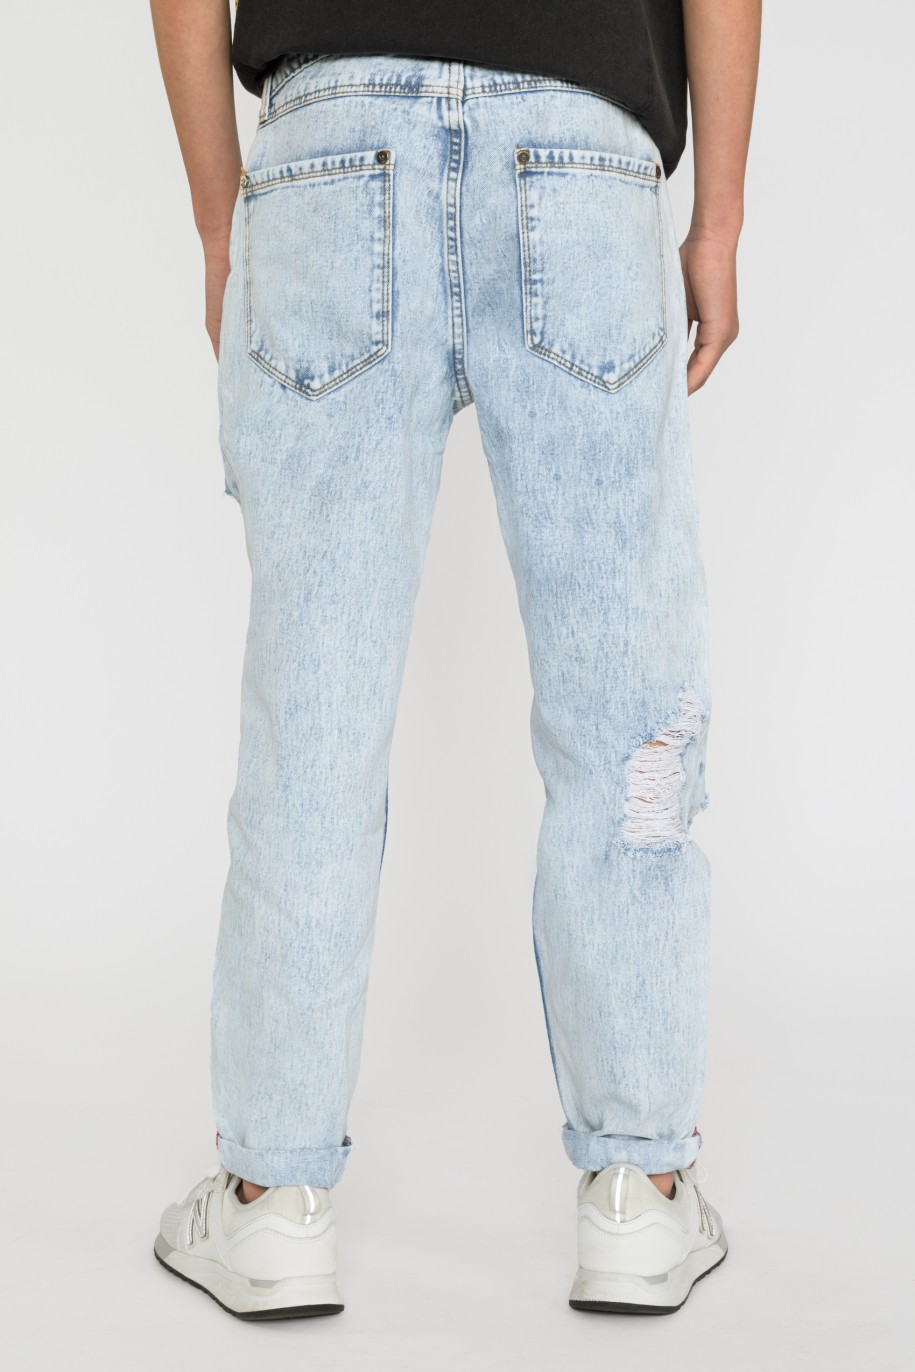 Jasne jeansowe spodnie dla chłopaka z przetarciami - 33191